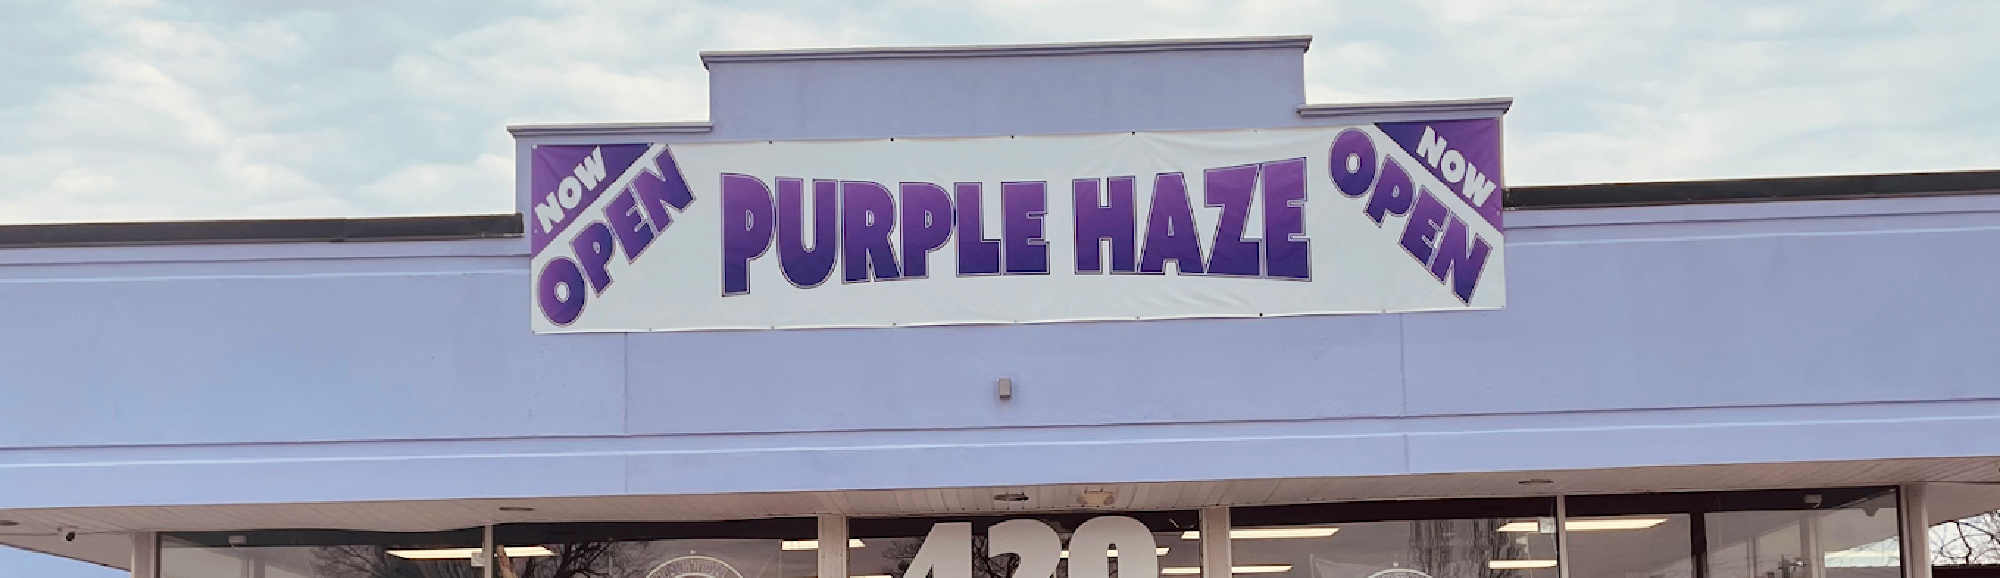 image of purple haze in lexington ky